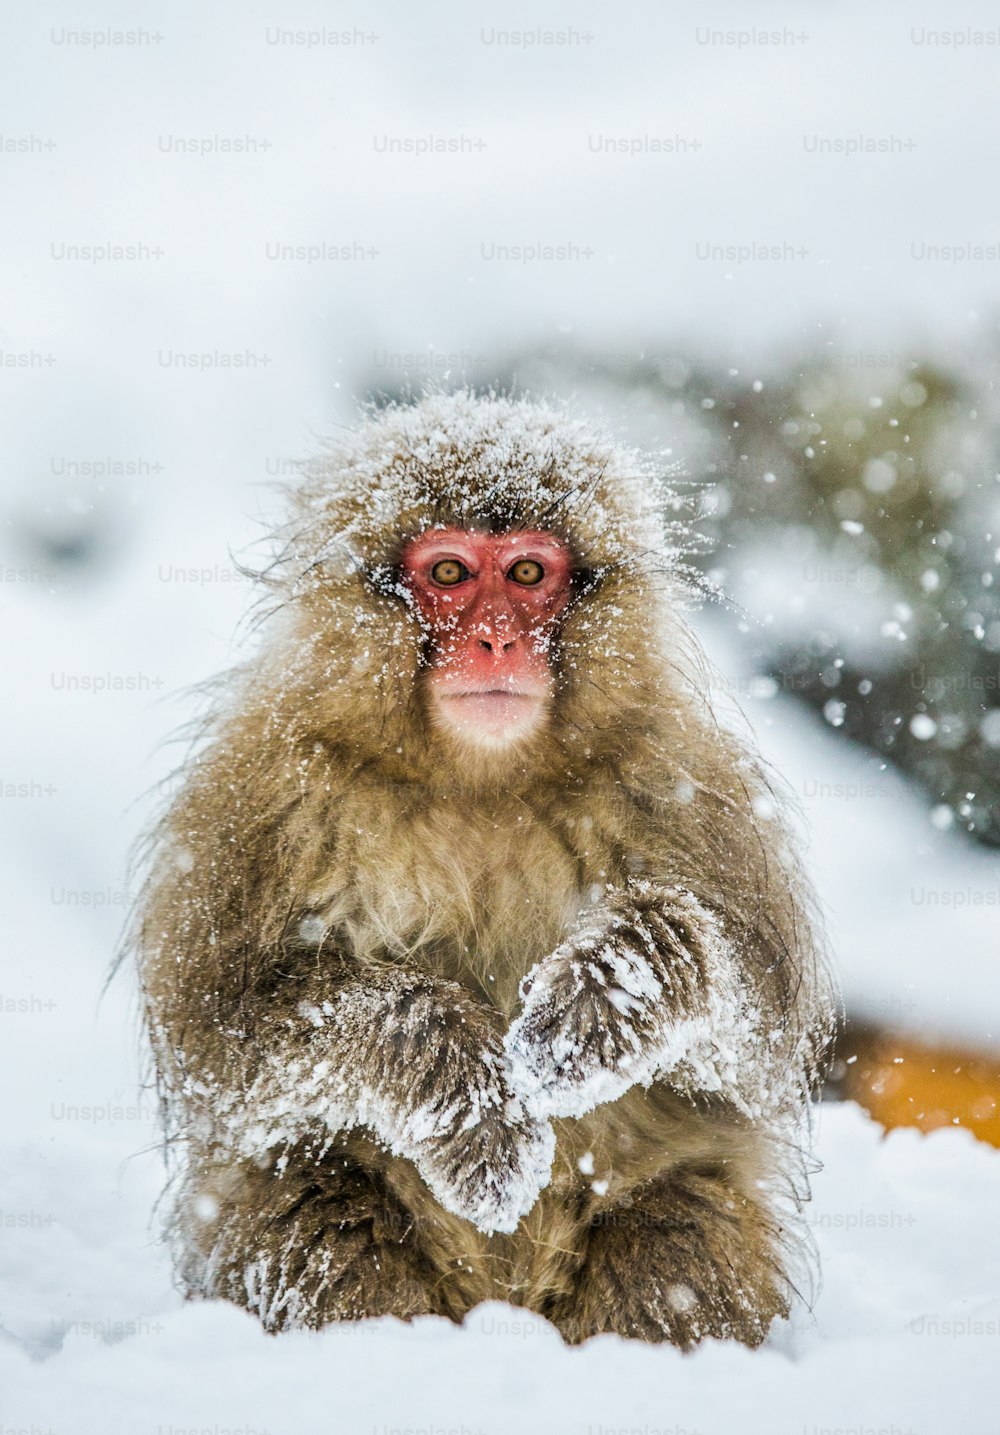 Cartero lavar mayoria Más de 999 fotos de monos de nieve | Descargar imágenes gratis en Unsplash